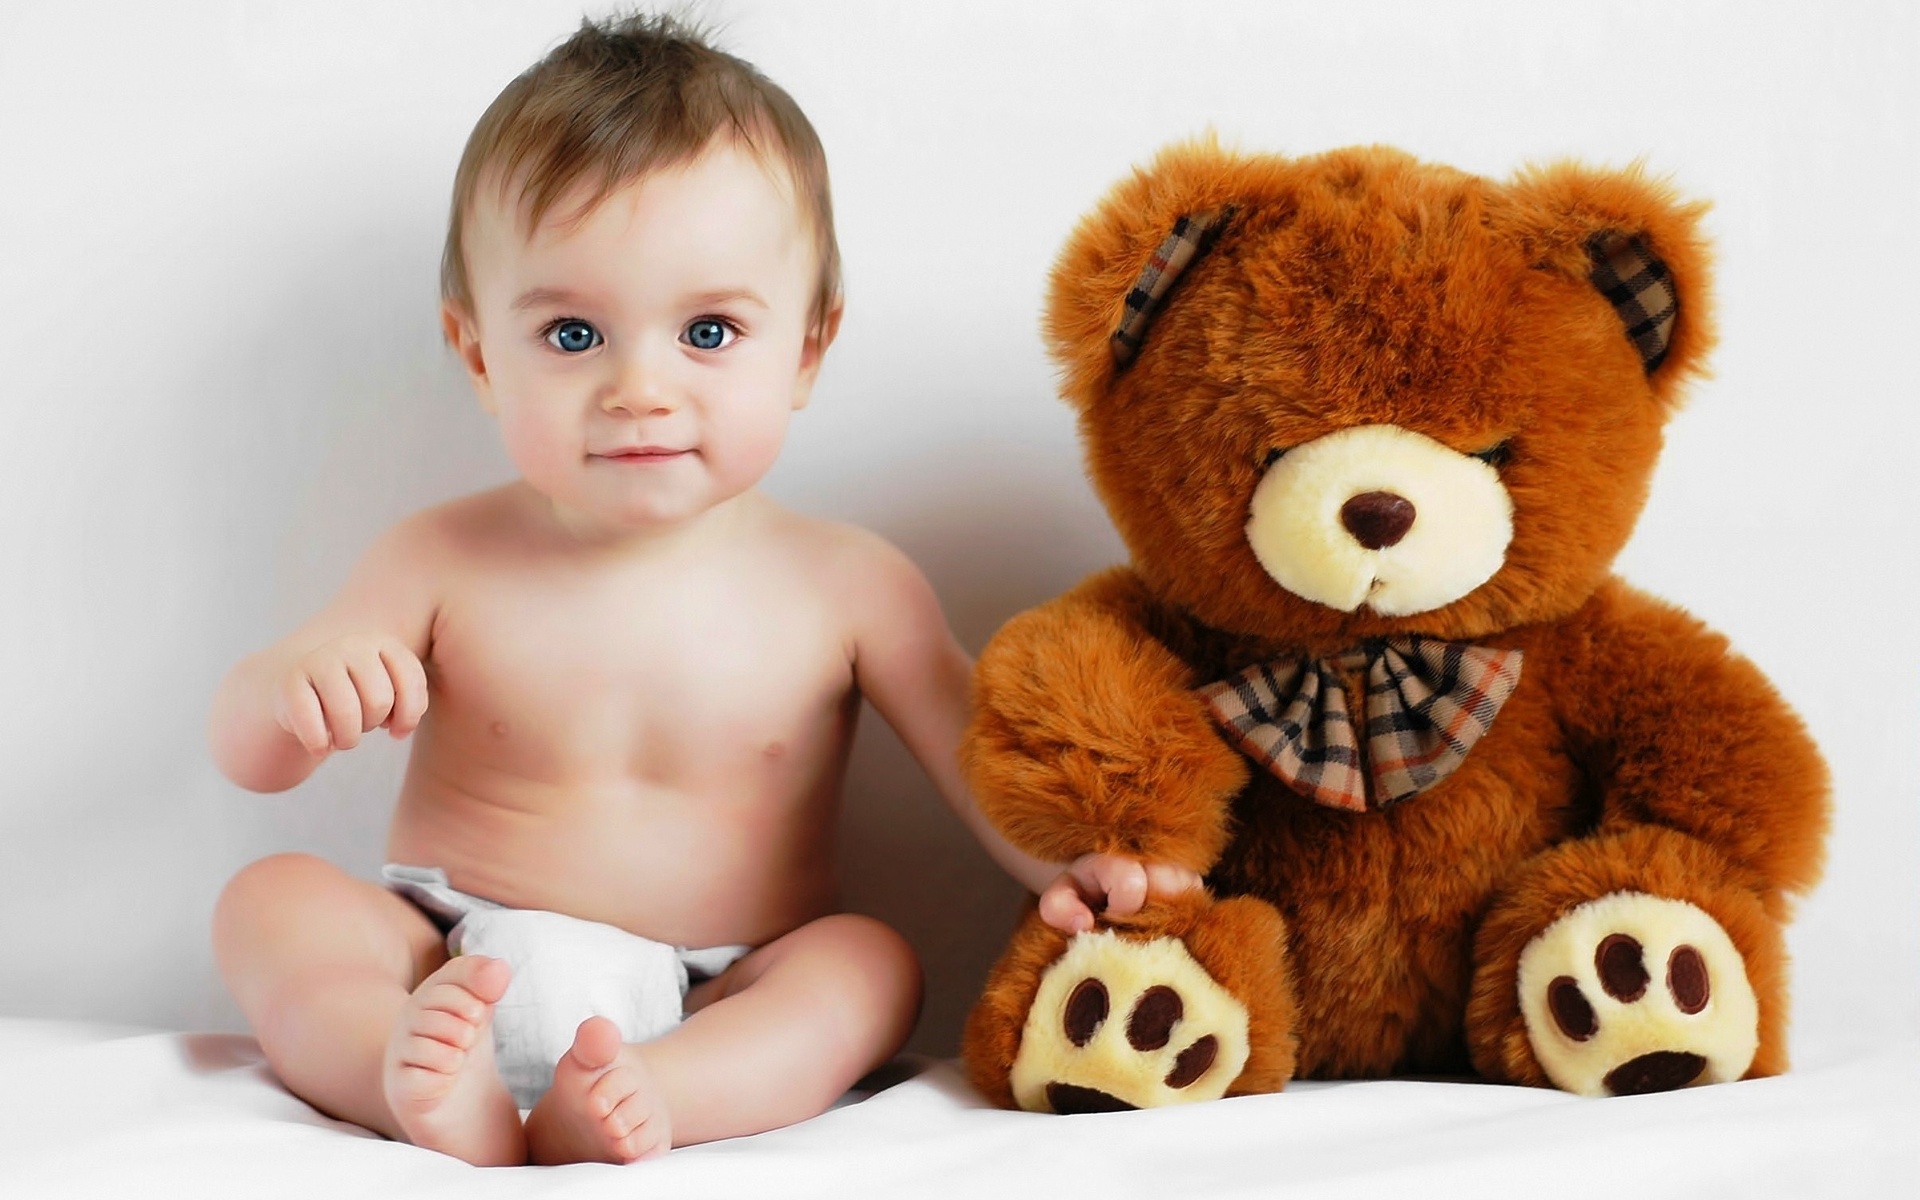 baby, cute, child, photography, bear, teddy bear